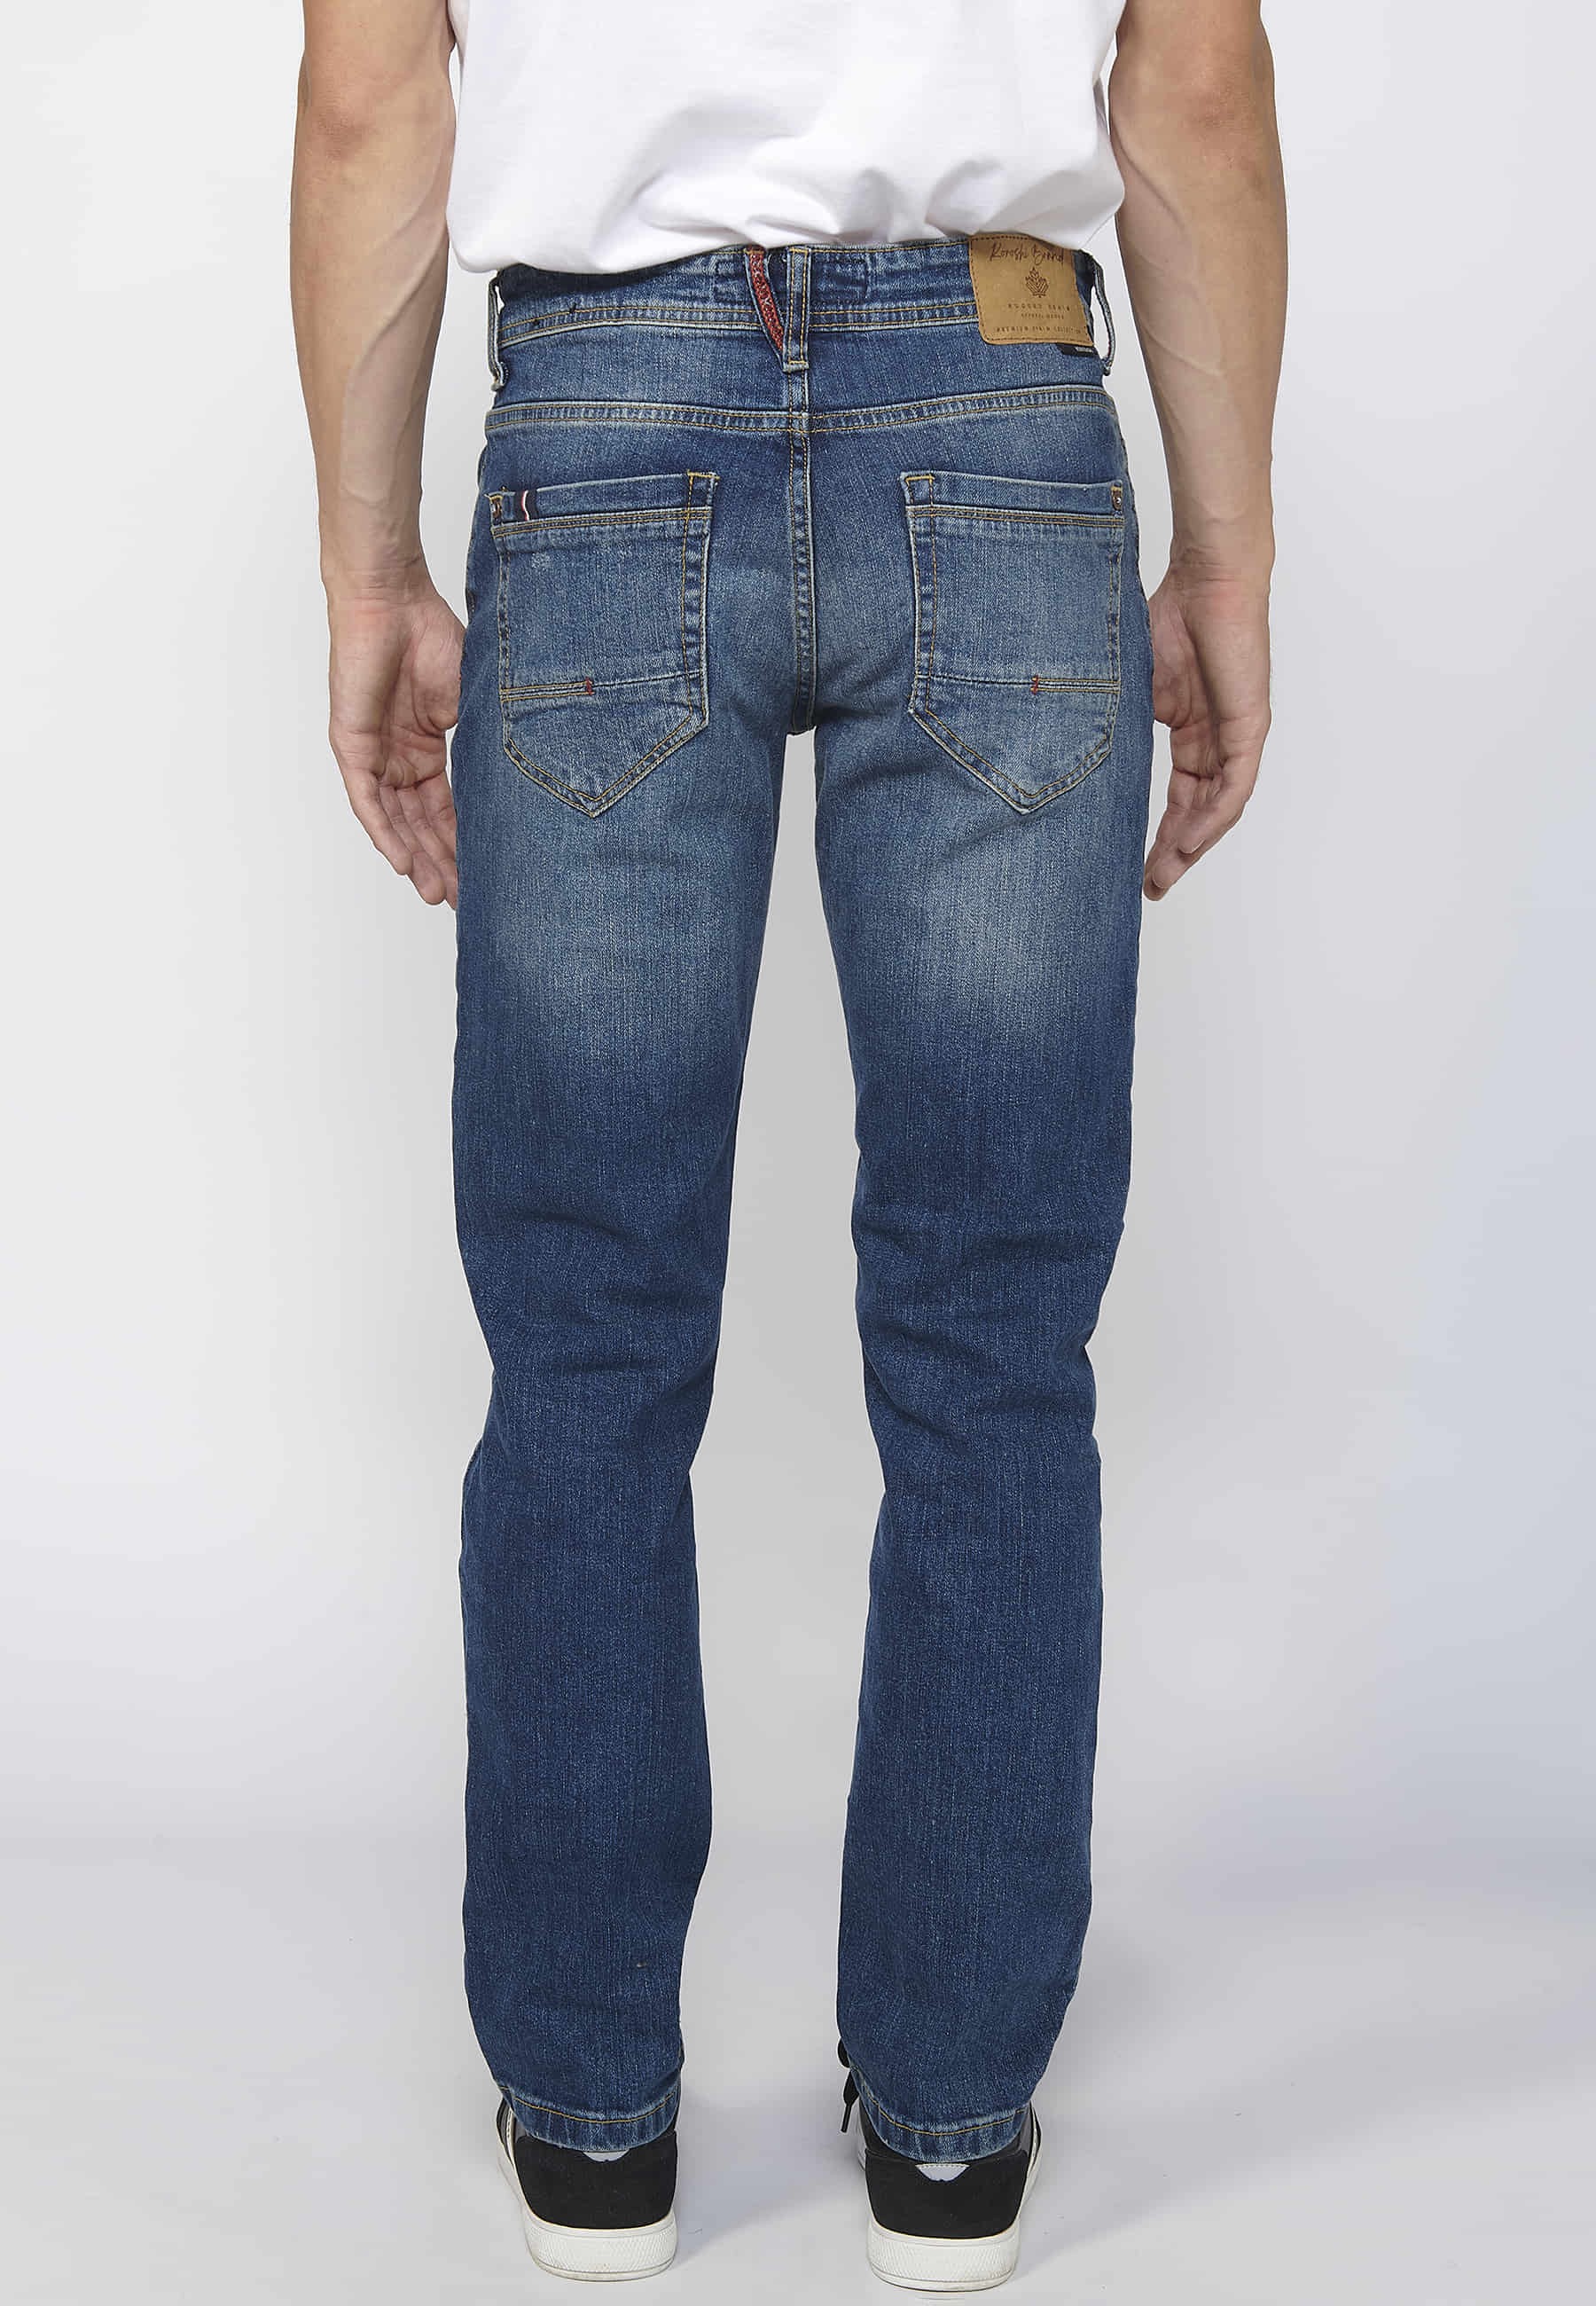 Pantalons llargs denim straigtht regular fit amb tancament davanter amb cremallera i botó color blau per a Home 1